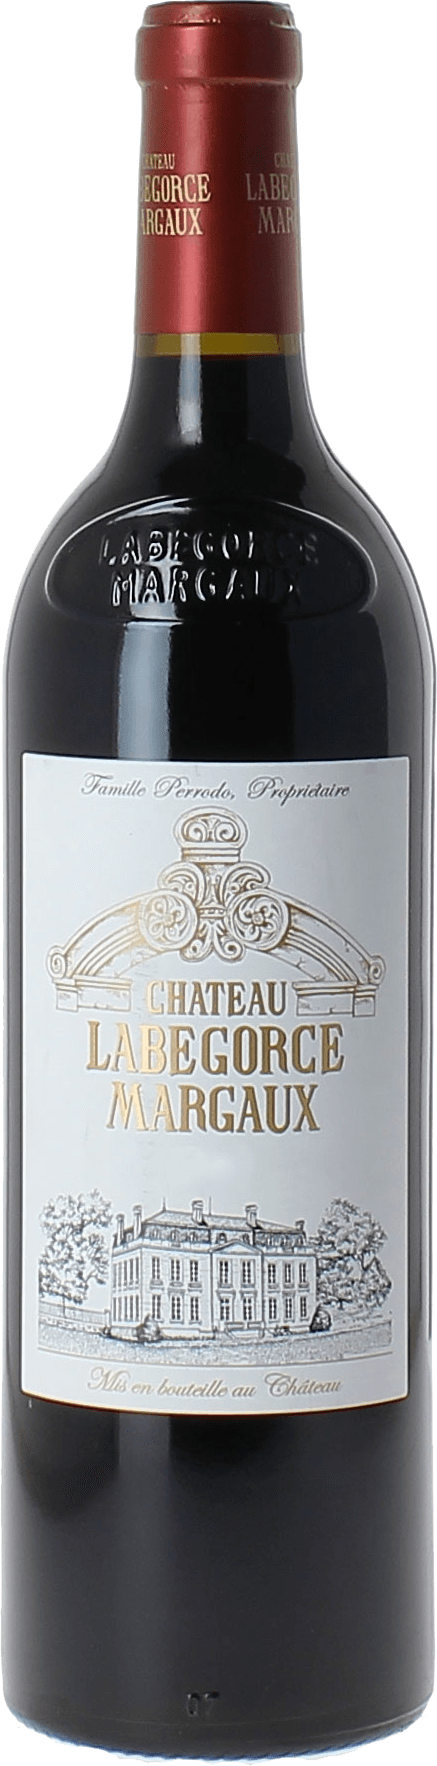 Labgorce 2017  Margaux, Bordeaux rouge